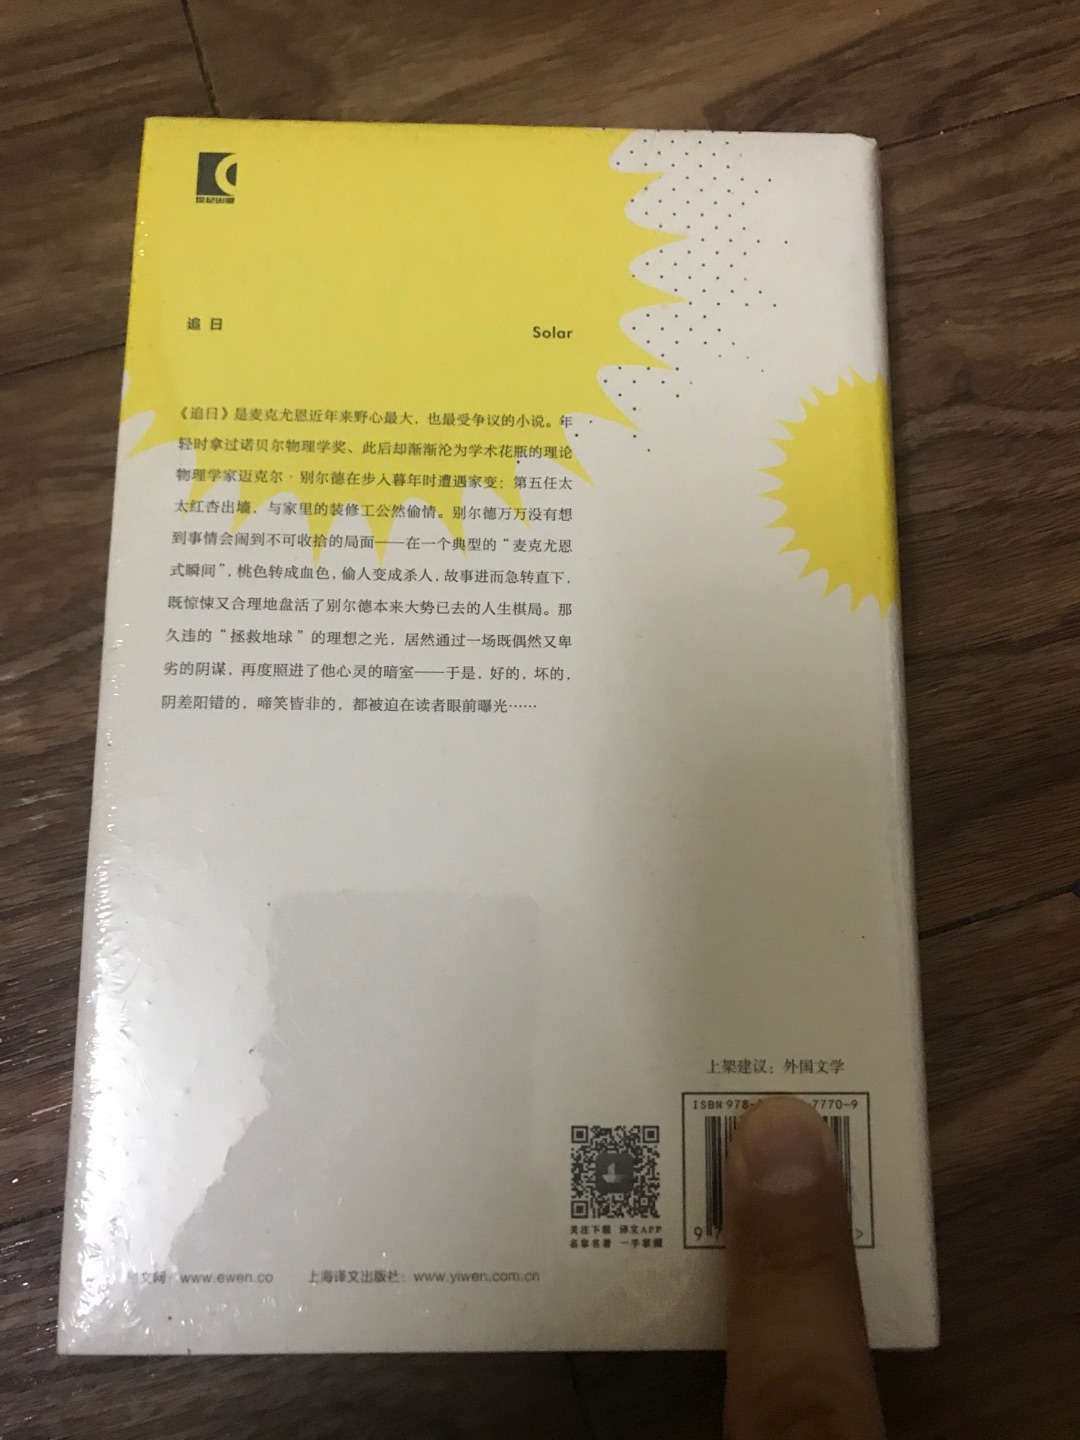 上海译文出版社出版的麦克尤恩作品集之《追日》，麦克尤恩在英国文坛堪称奇迹。这套书均是32开本的硬壳精装，方便携带阅读，印刷精美，字迹清楚，行间距便于阅读，值得推荐。